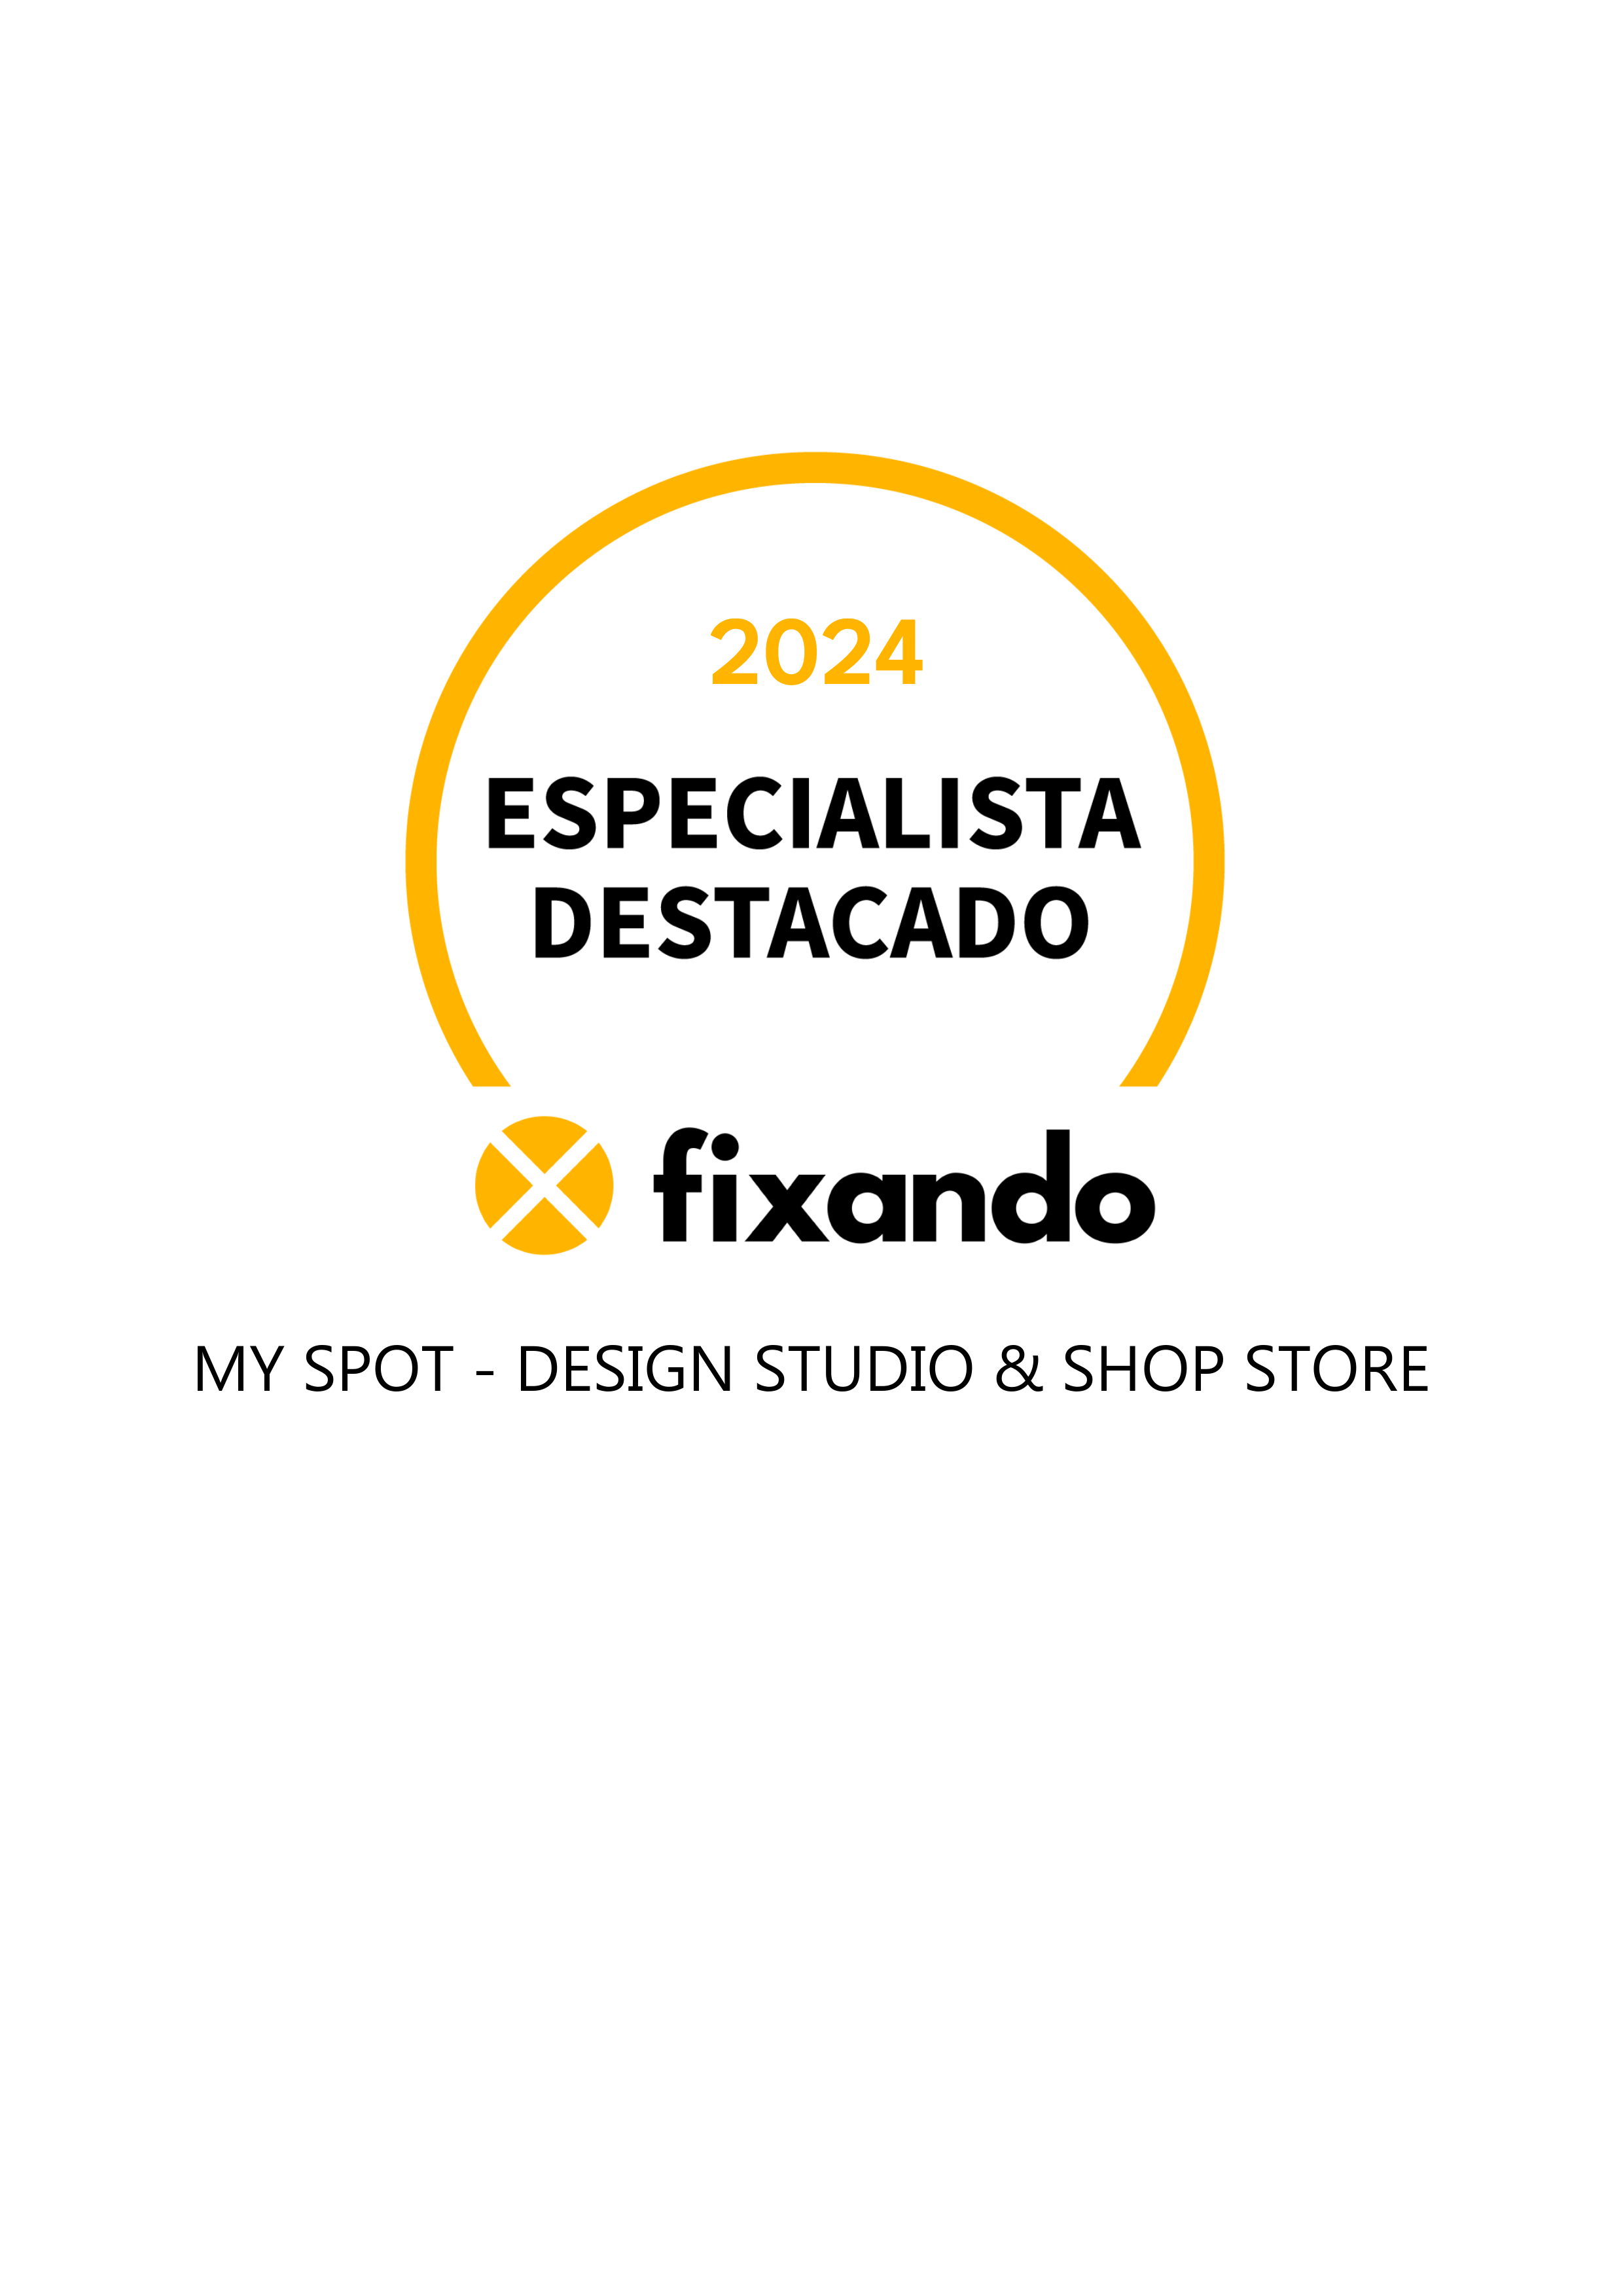 My Spot - Design Studio & Shop Store - Cascais - Valorização Imobiliária